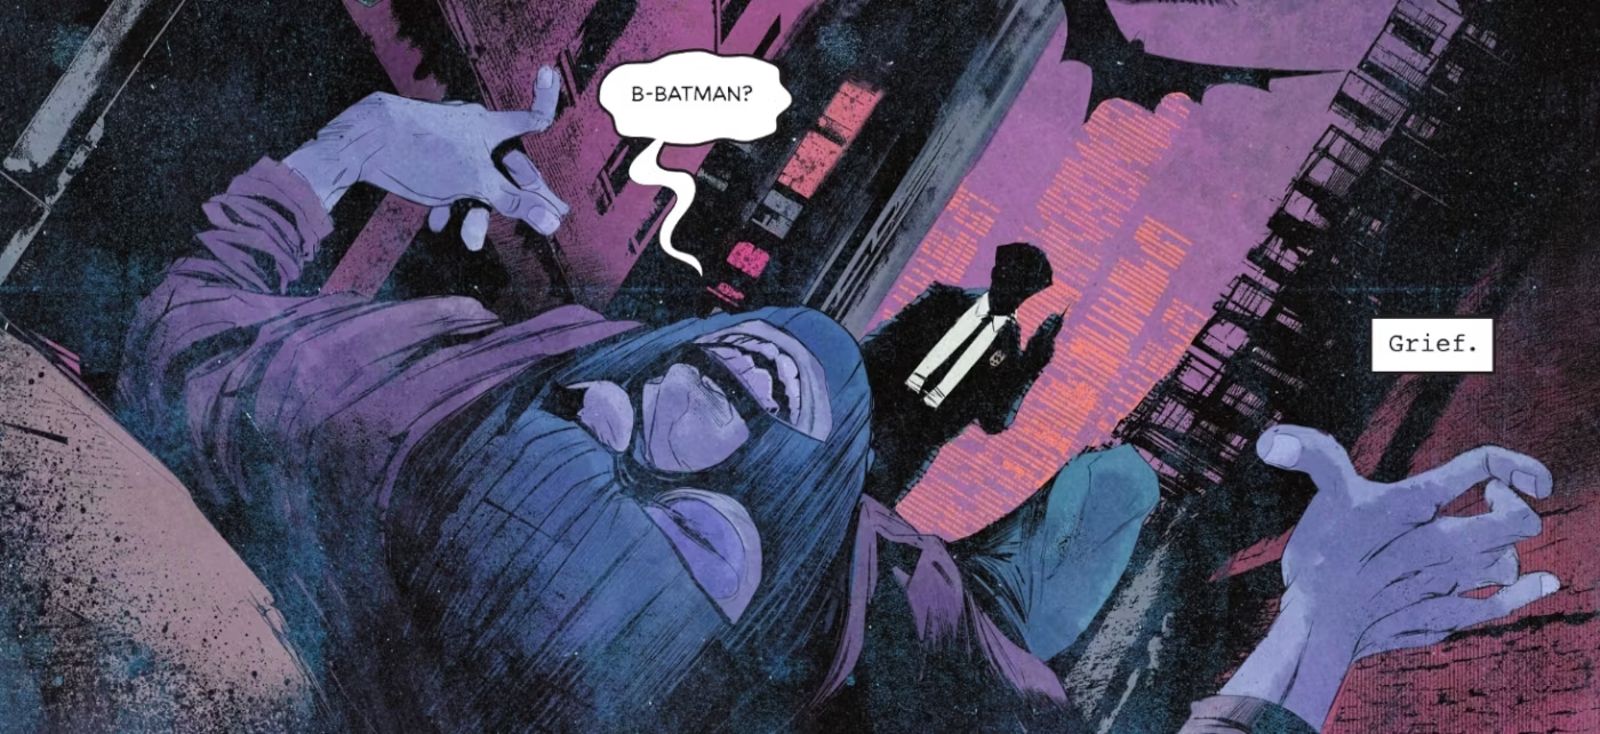 Um criminoso de Gotham está deitado em um beco, espancado, gaguejando “Batman” enquanto uma figura vestindo terno se aproxima.